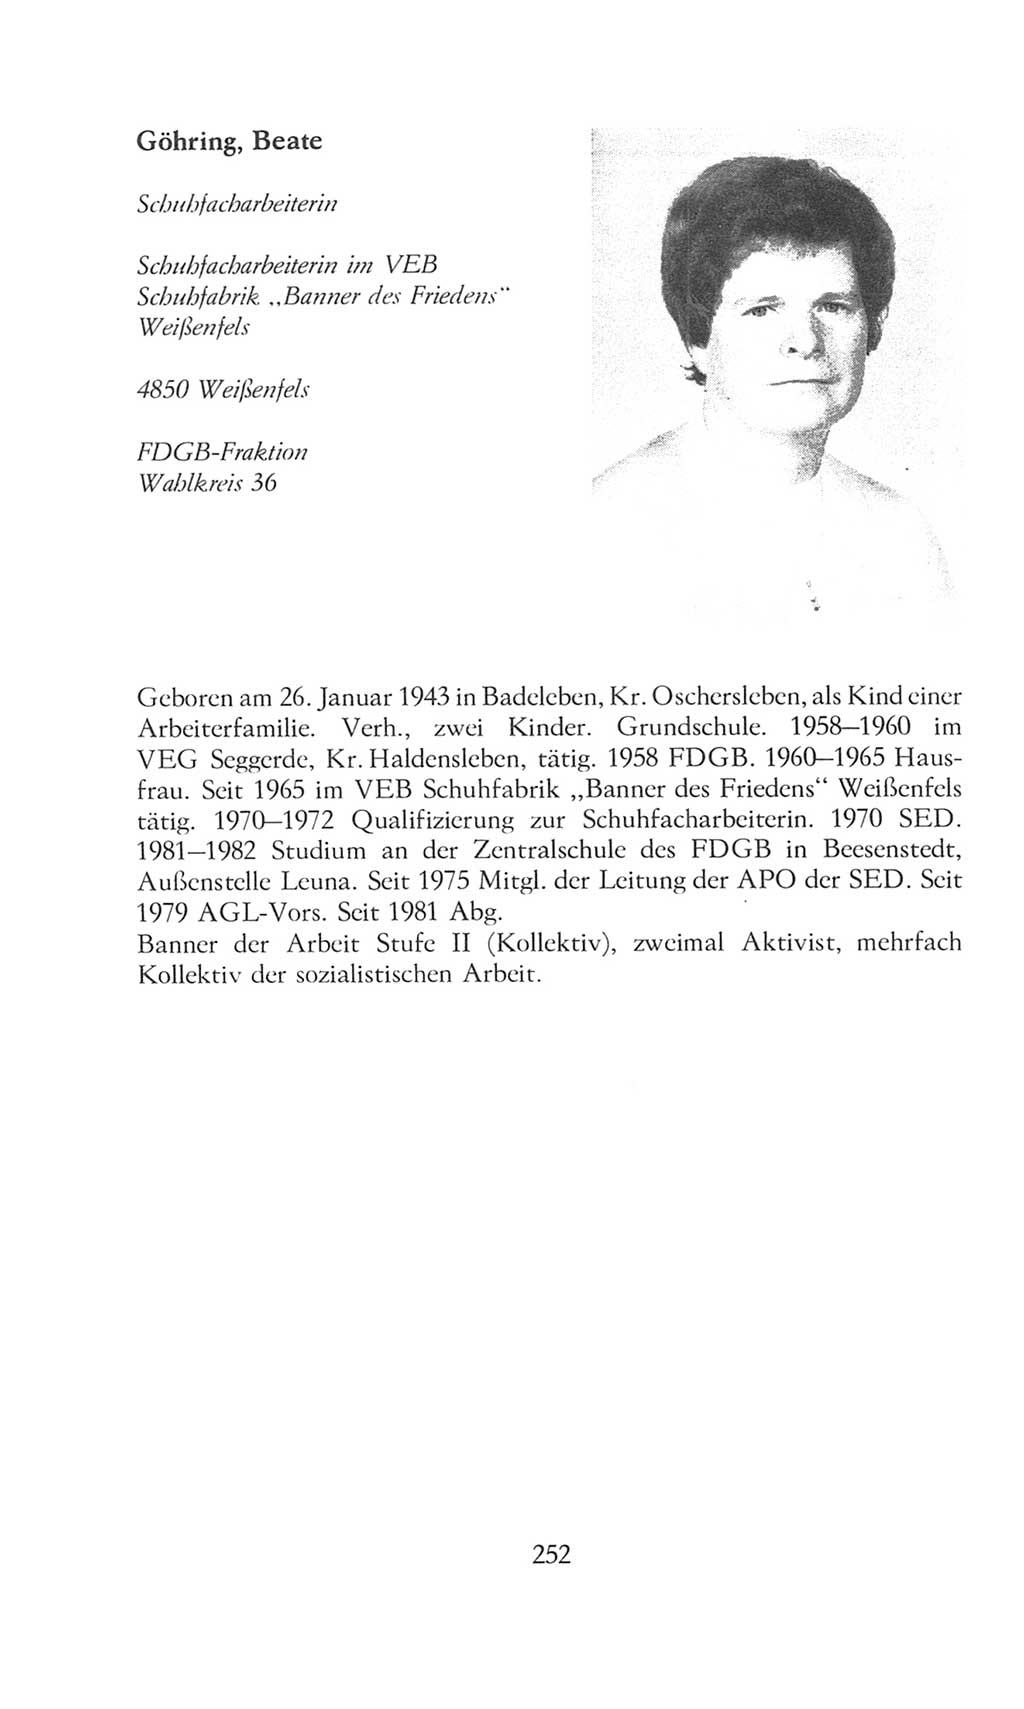 Volkskammer (VK) der Deutschen Demokratischen Republik (DDR), 8. Wahlperiode 1981-1986, Seite 252 (VK. DDR 8. WP. 1981-1986, S. 252)